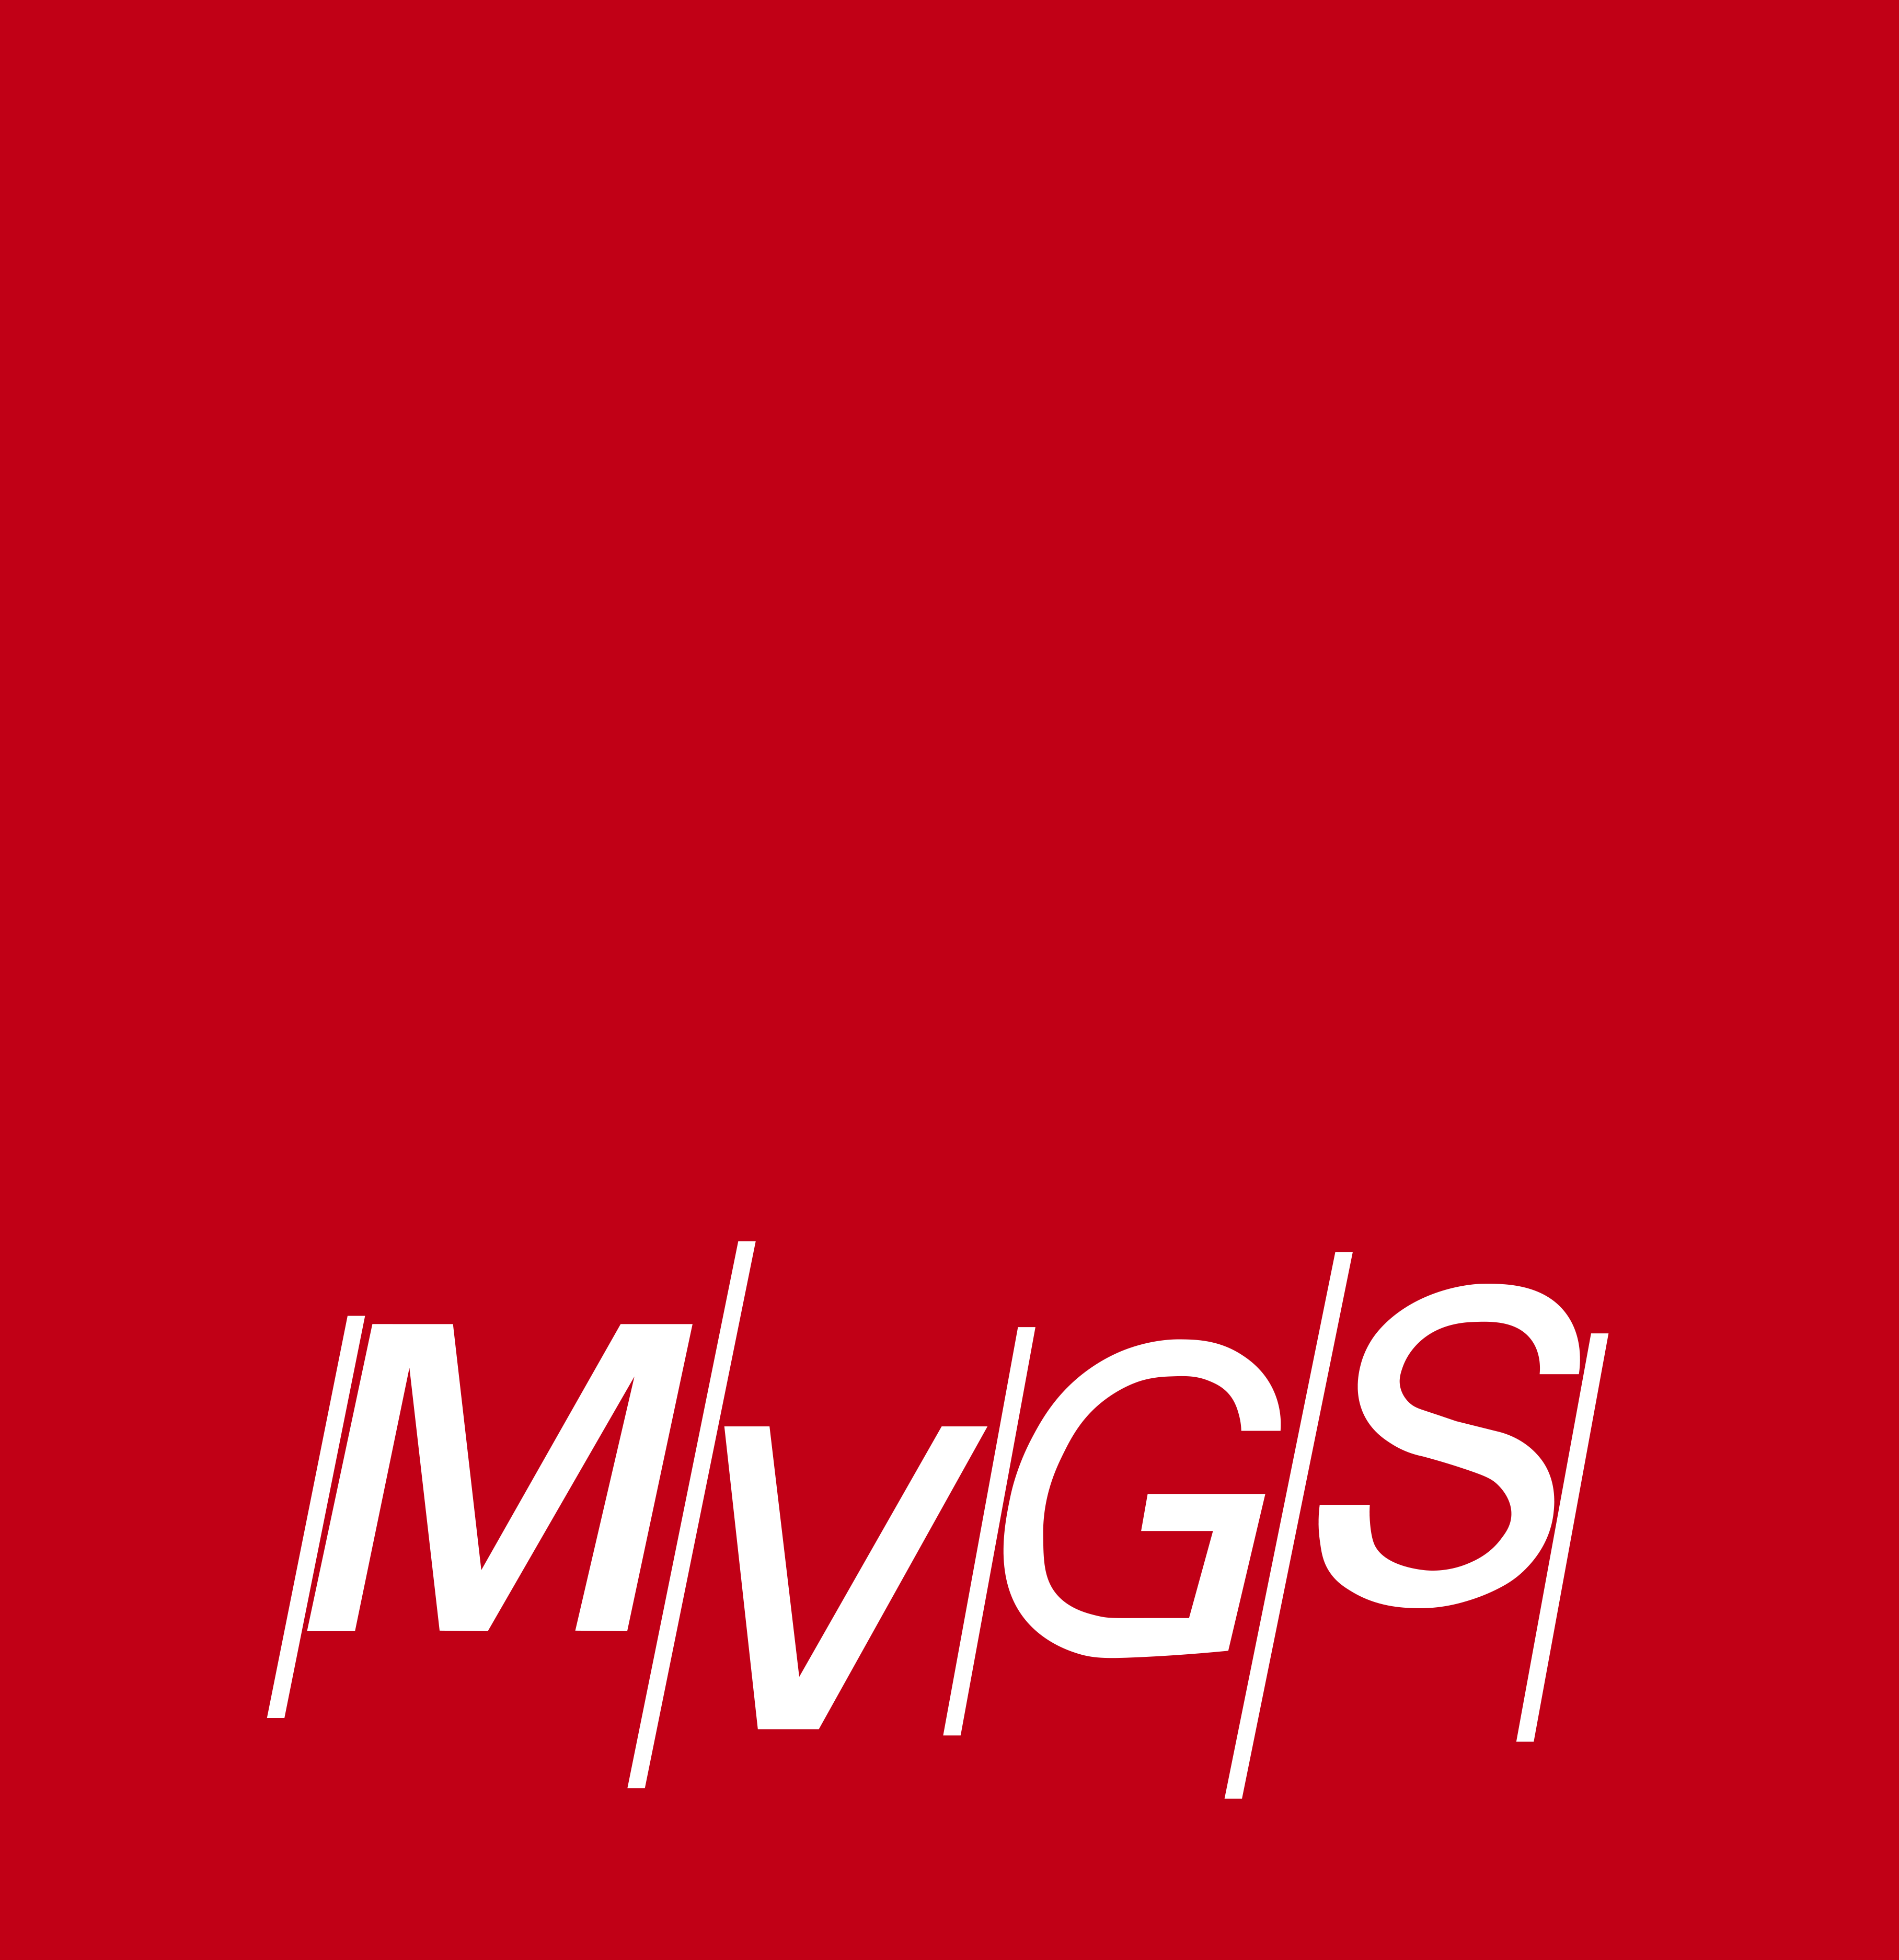 MVGS